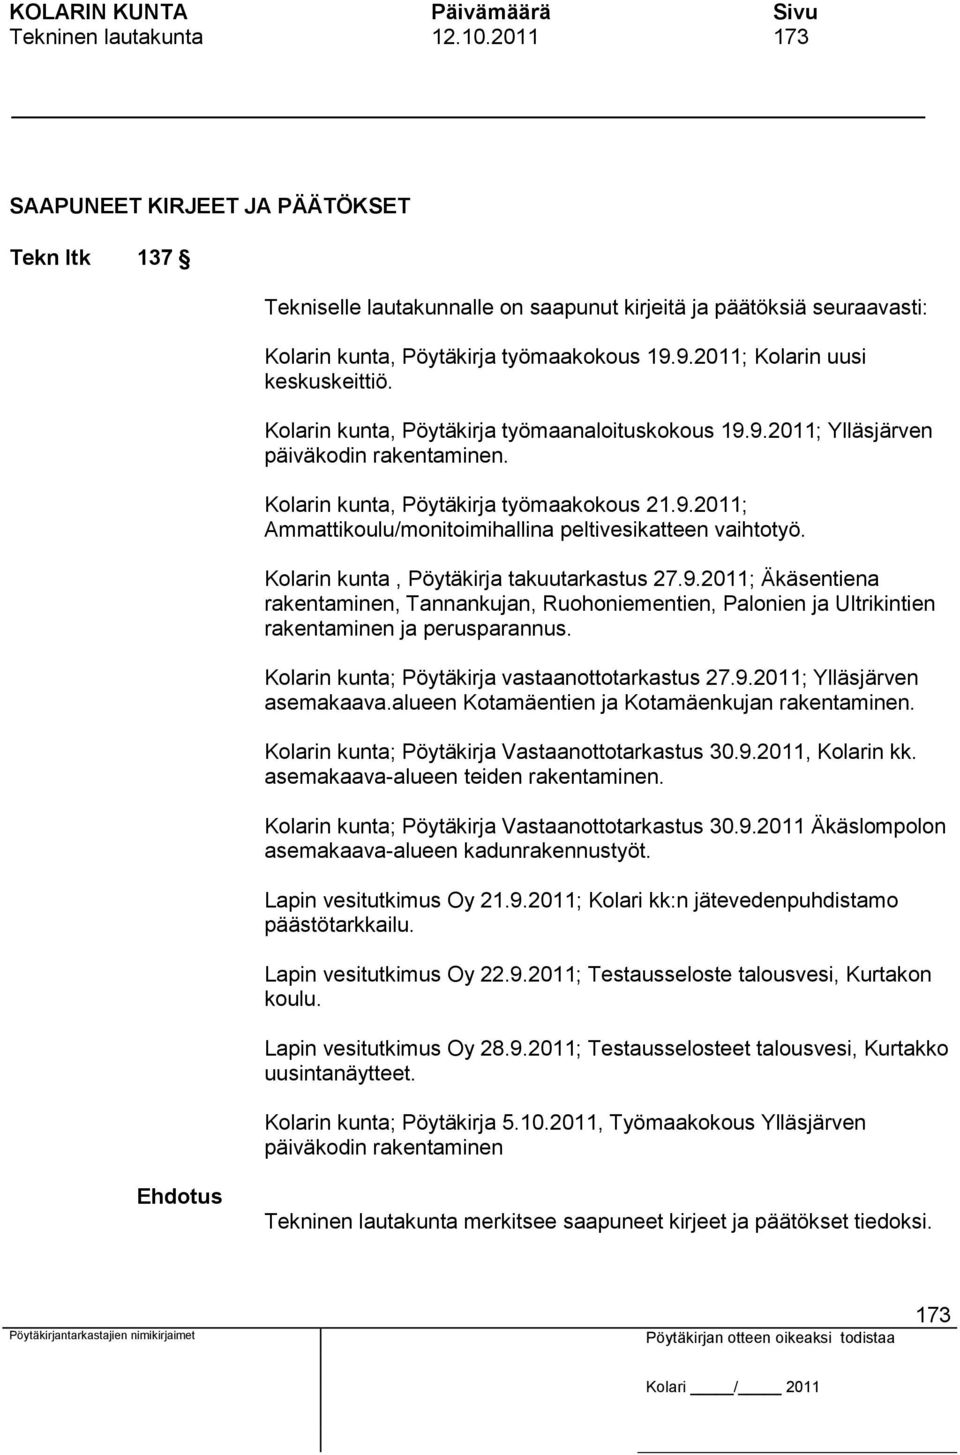 Kolarin kunta, Pöytäkirja takuutarkastus 27.9.2011; Äkäsentiena rakentaminen, Tannankujan, Ruohoniementien, Palonien ja Ultrikintien rakentaminen ja perusparannus.